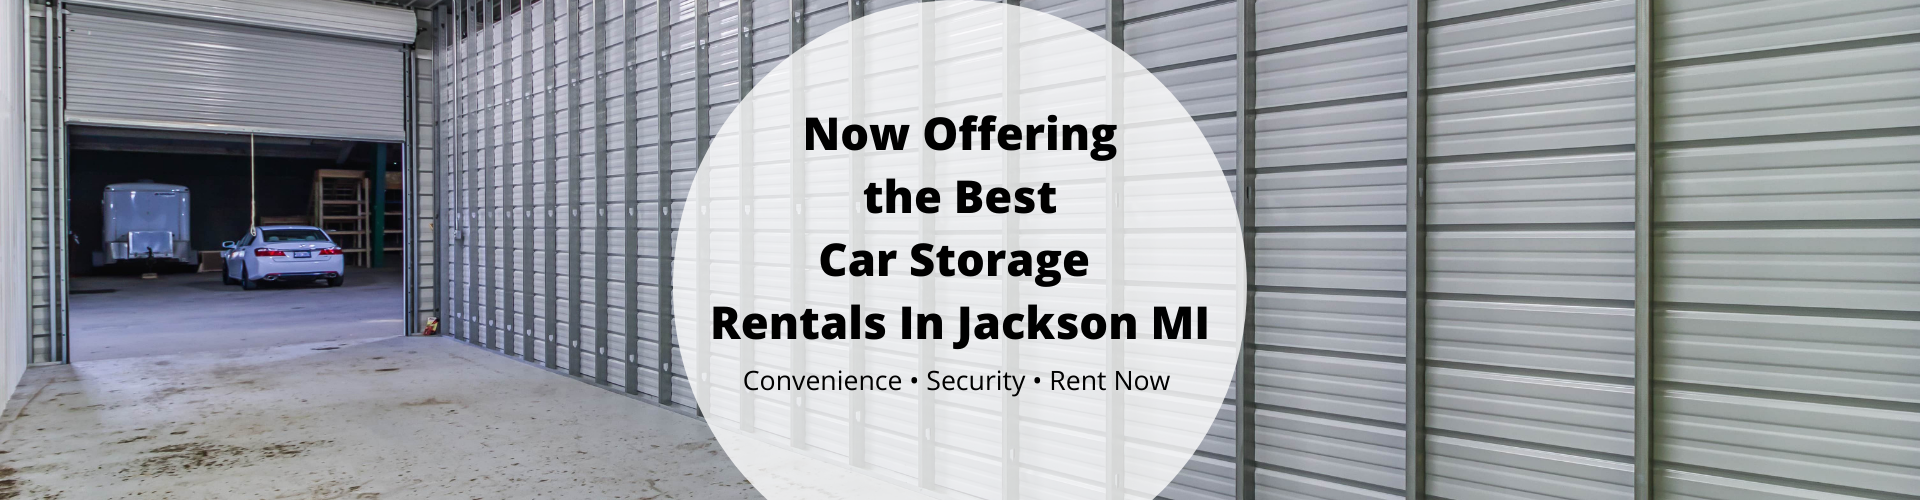 Car Storage Rentals in Jackson MI